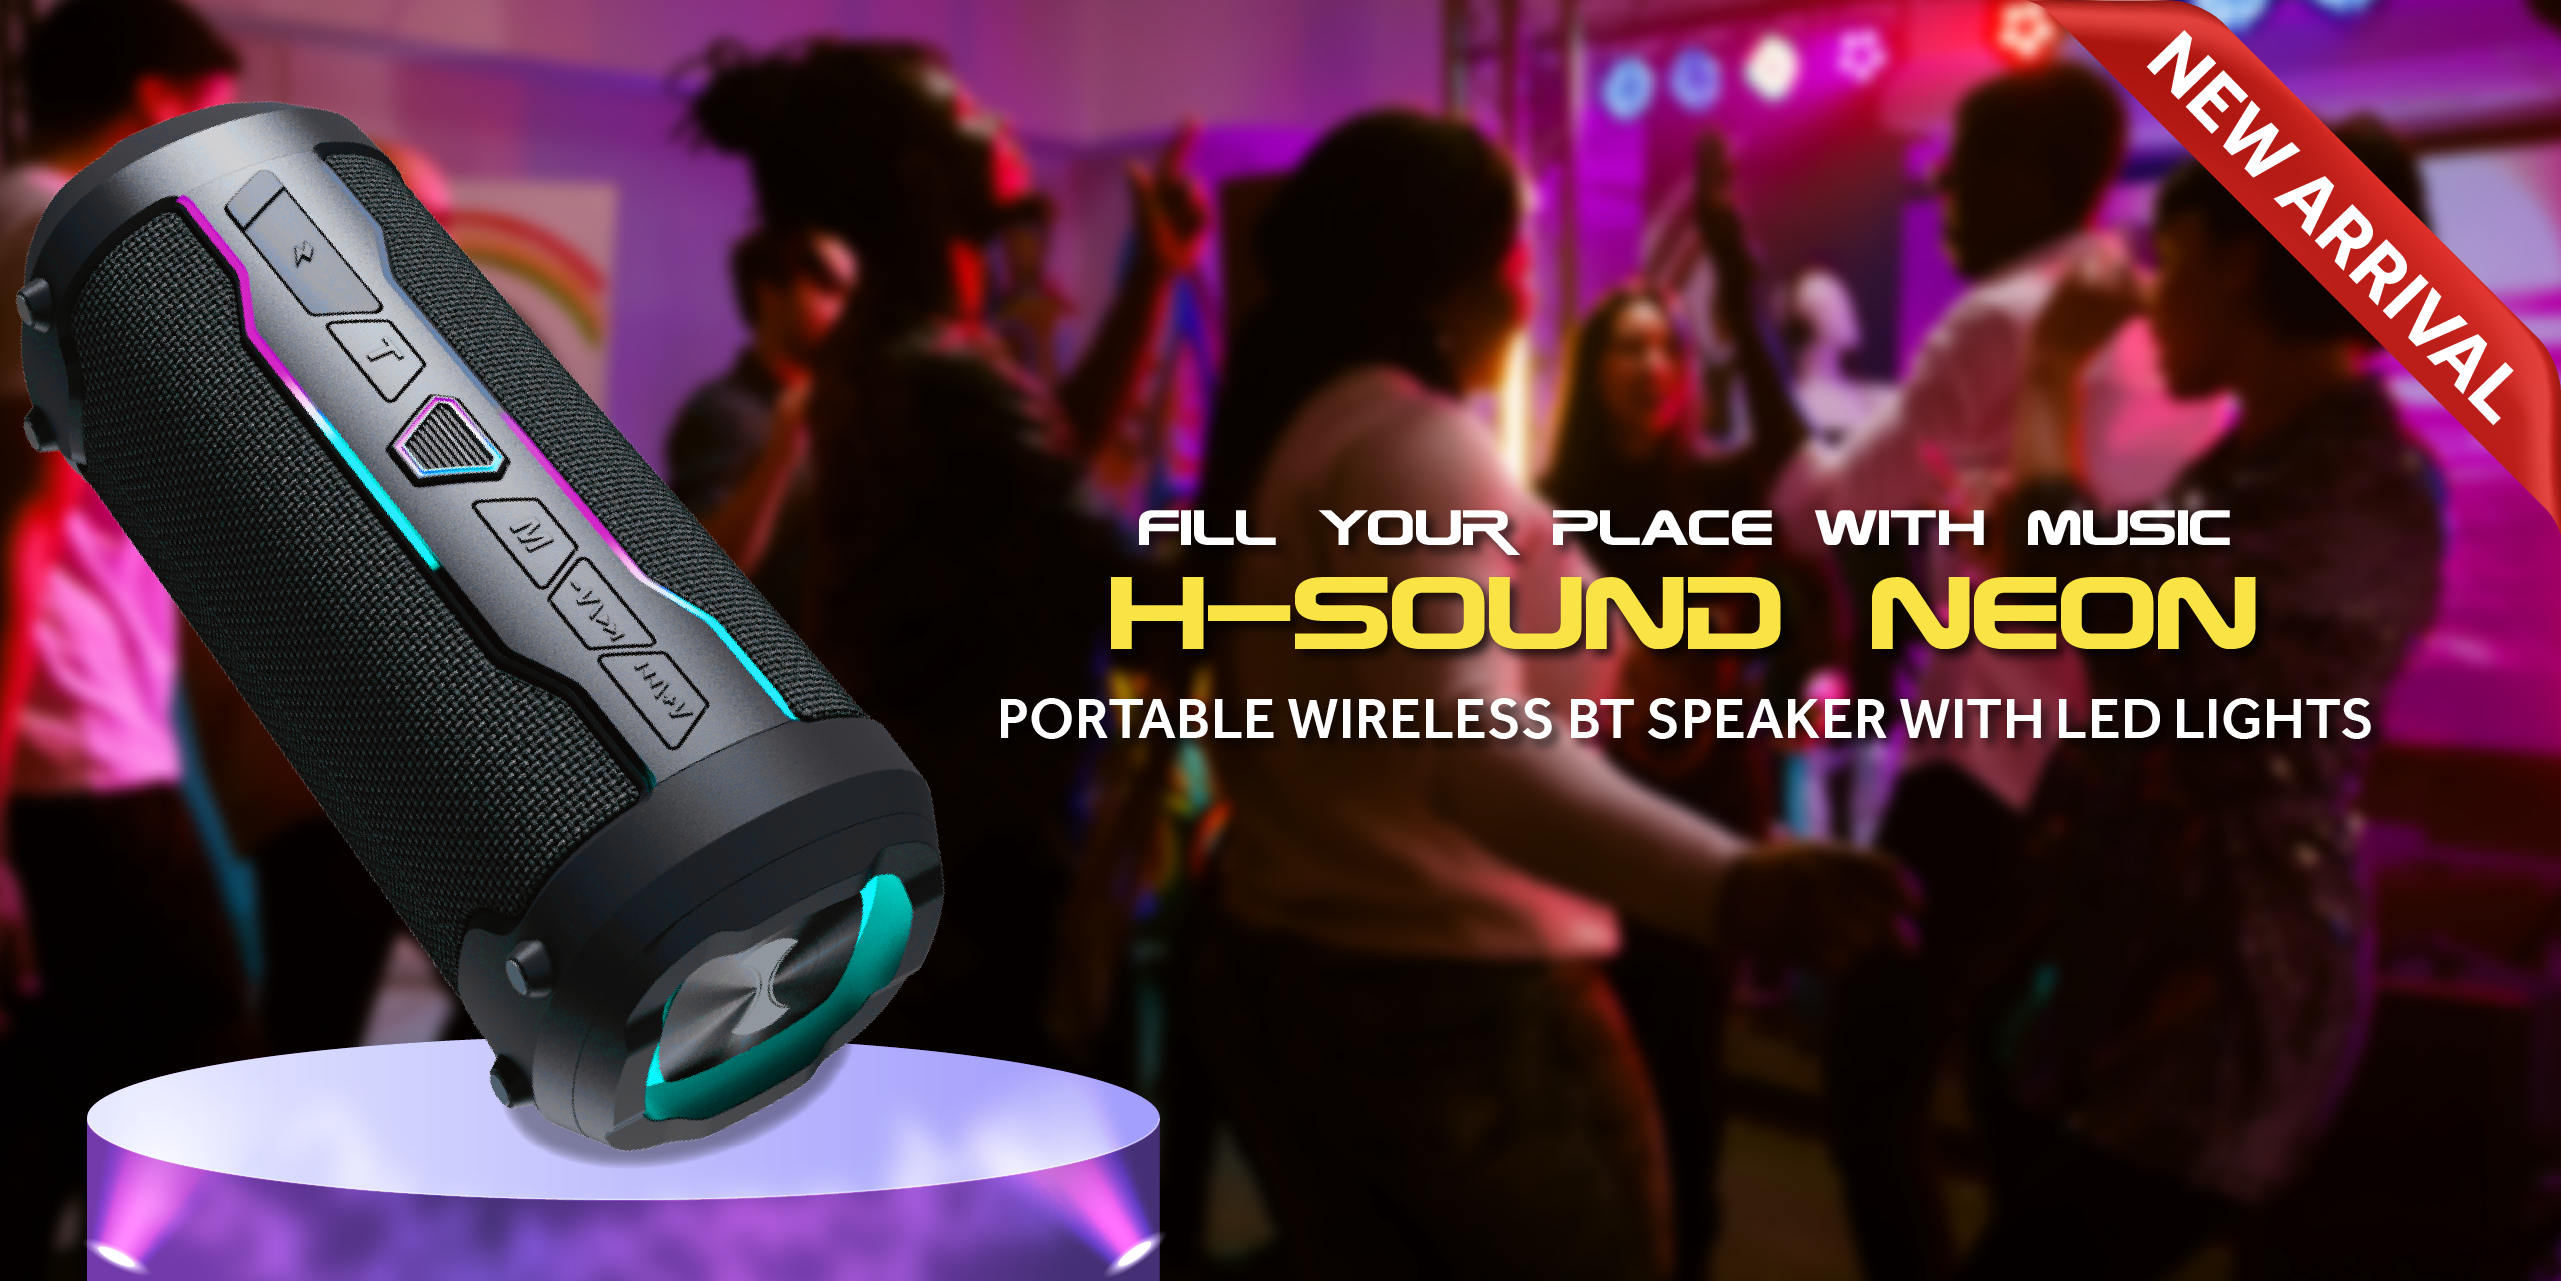 H-Sound Neon